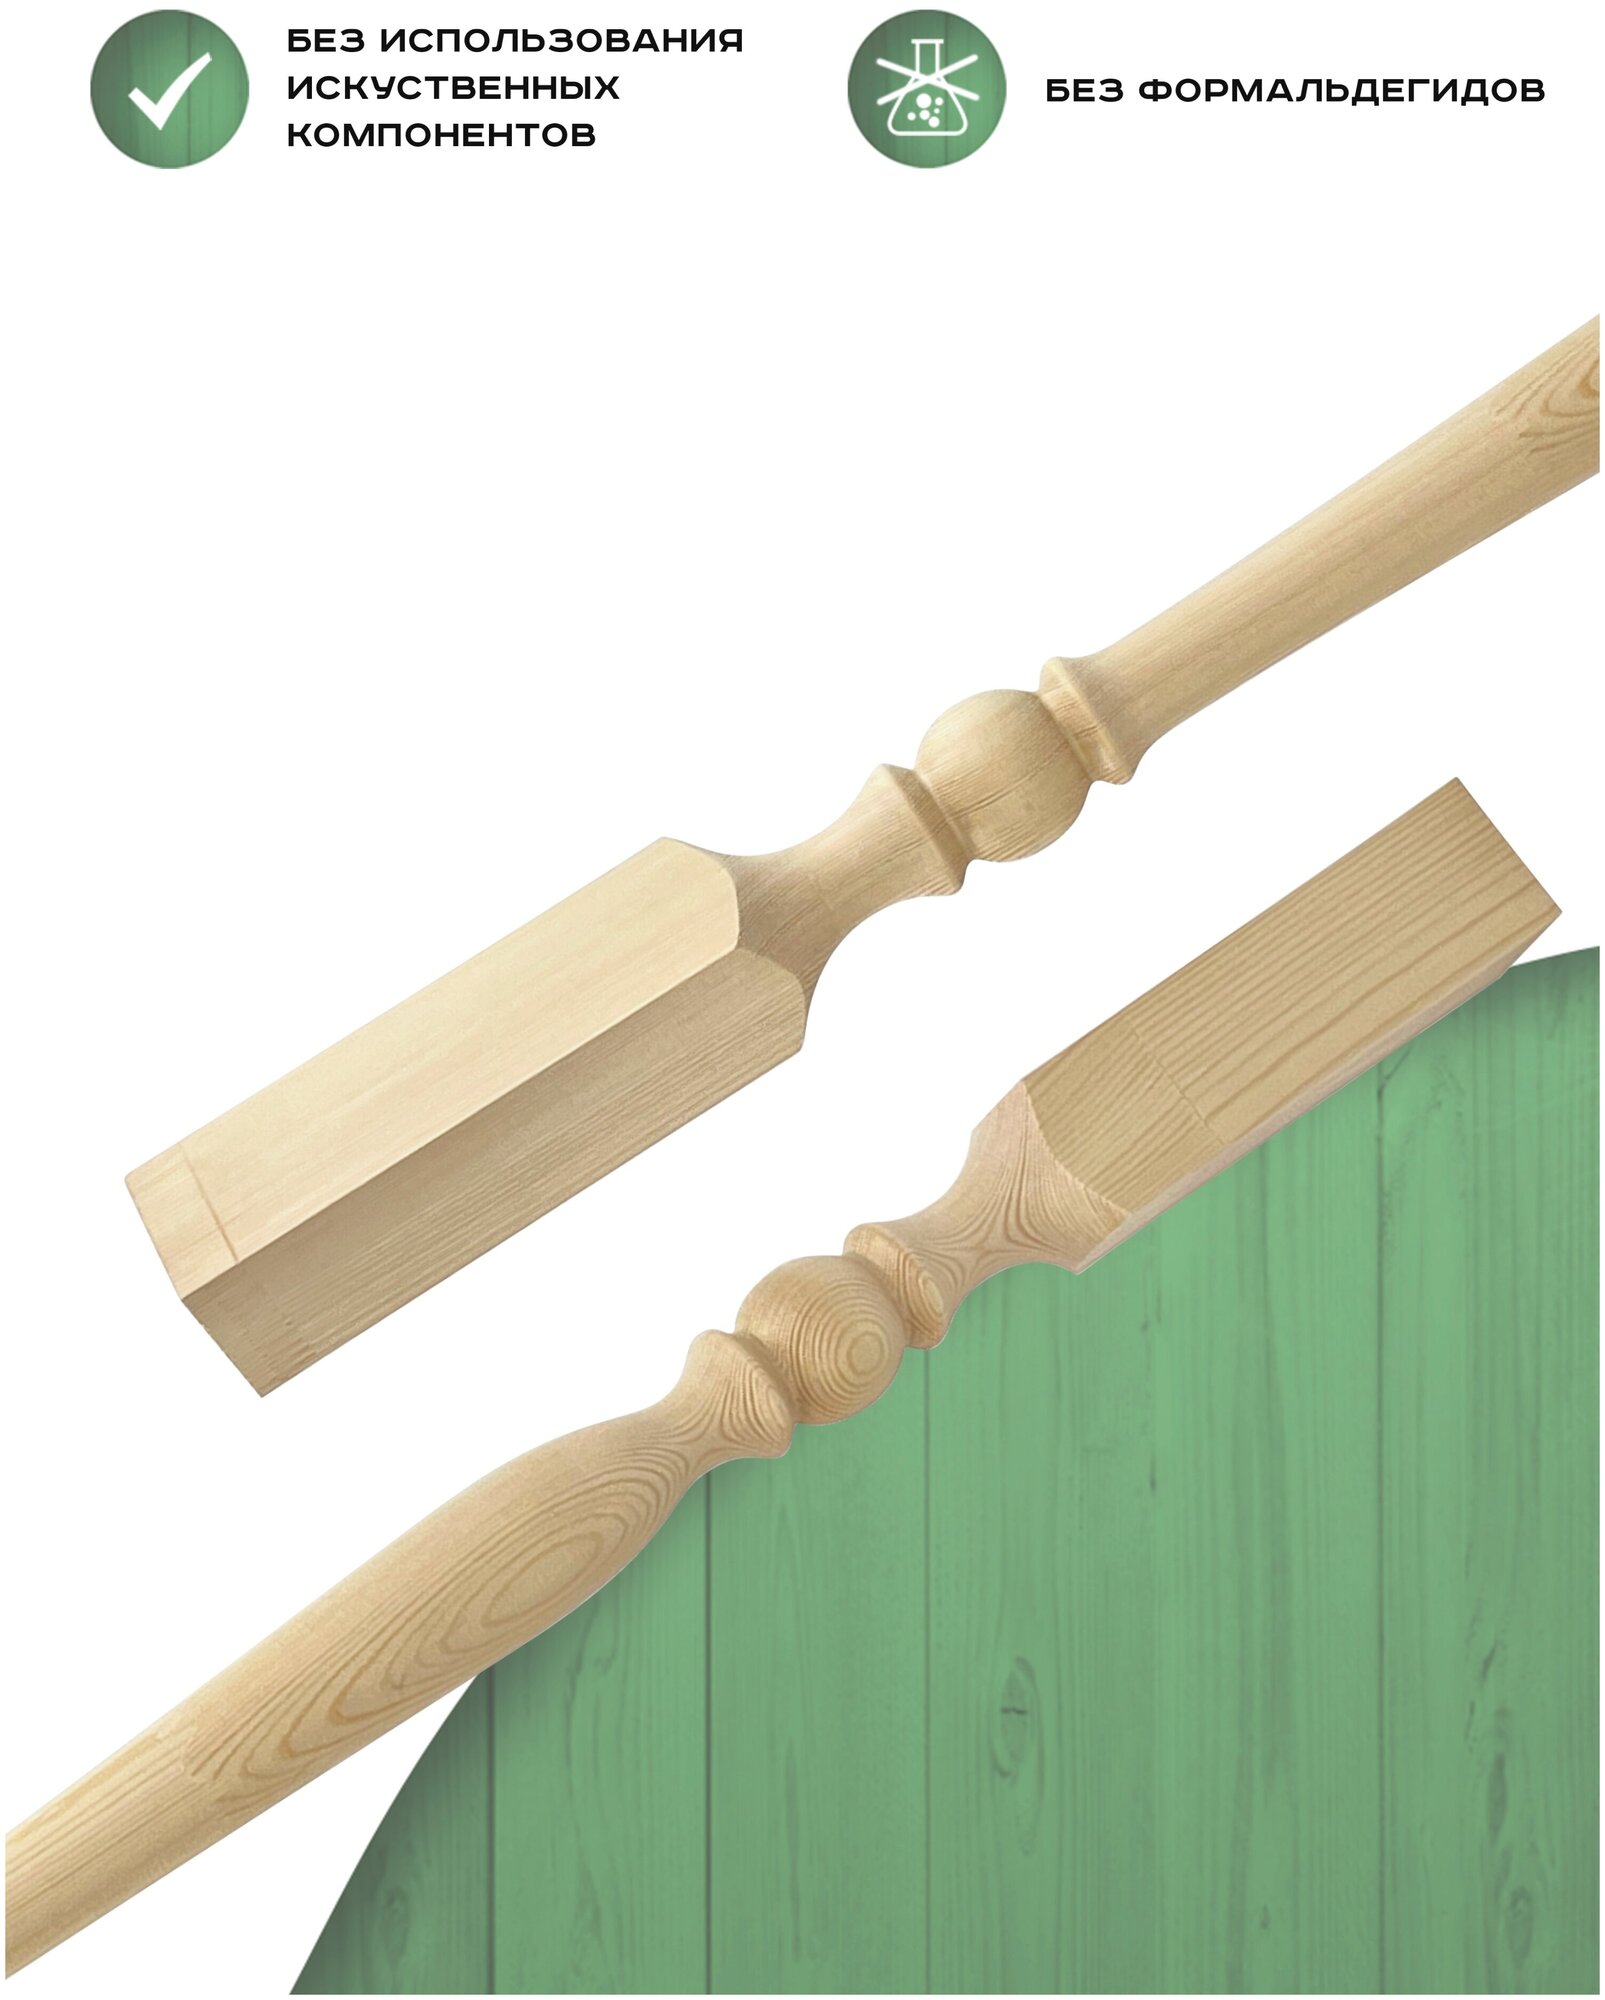 Набор 4 балясины деревянные 900х50х50мм / сращенная / ограждение для лестницы балюстрада из сосны премиум АА модель 50AN14